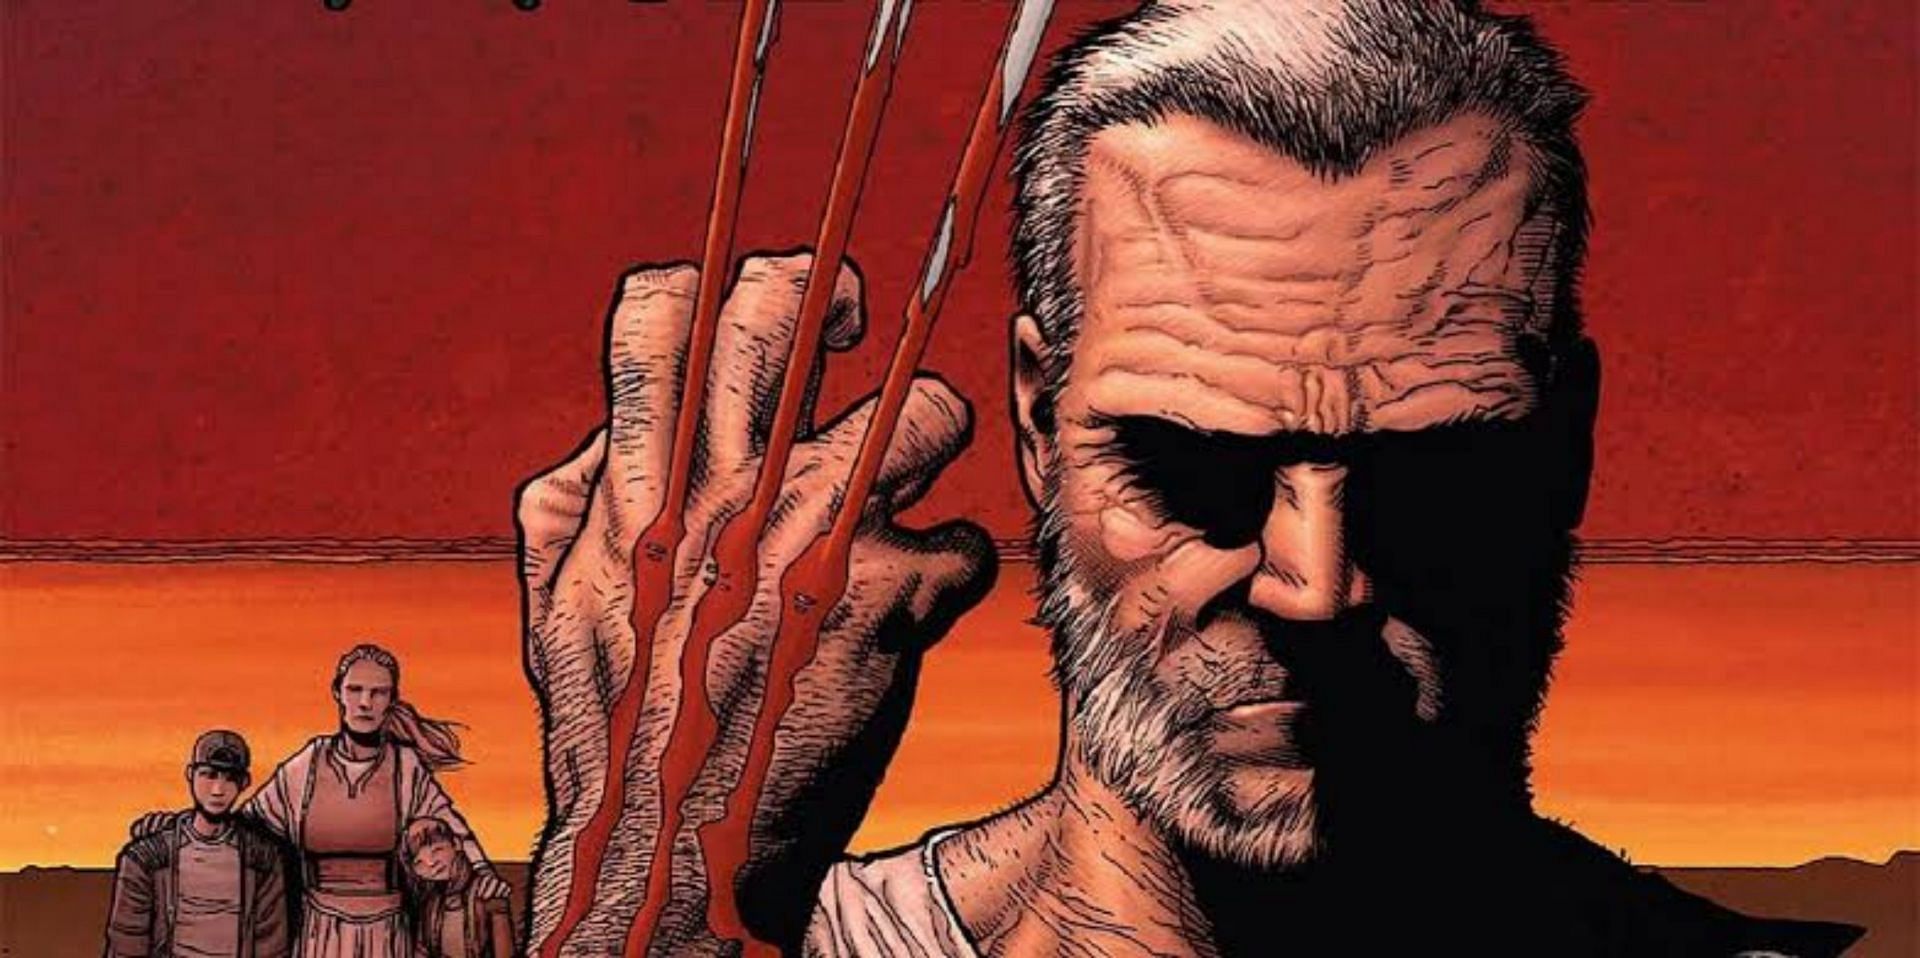 Wolverine (Image via Marvel Comics)